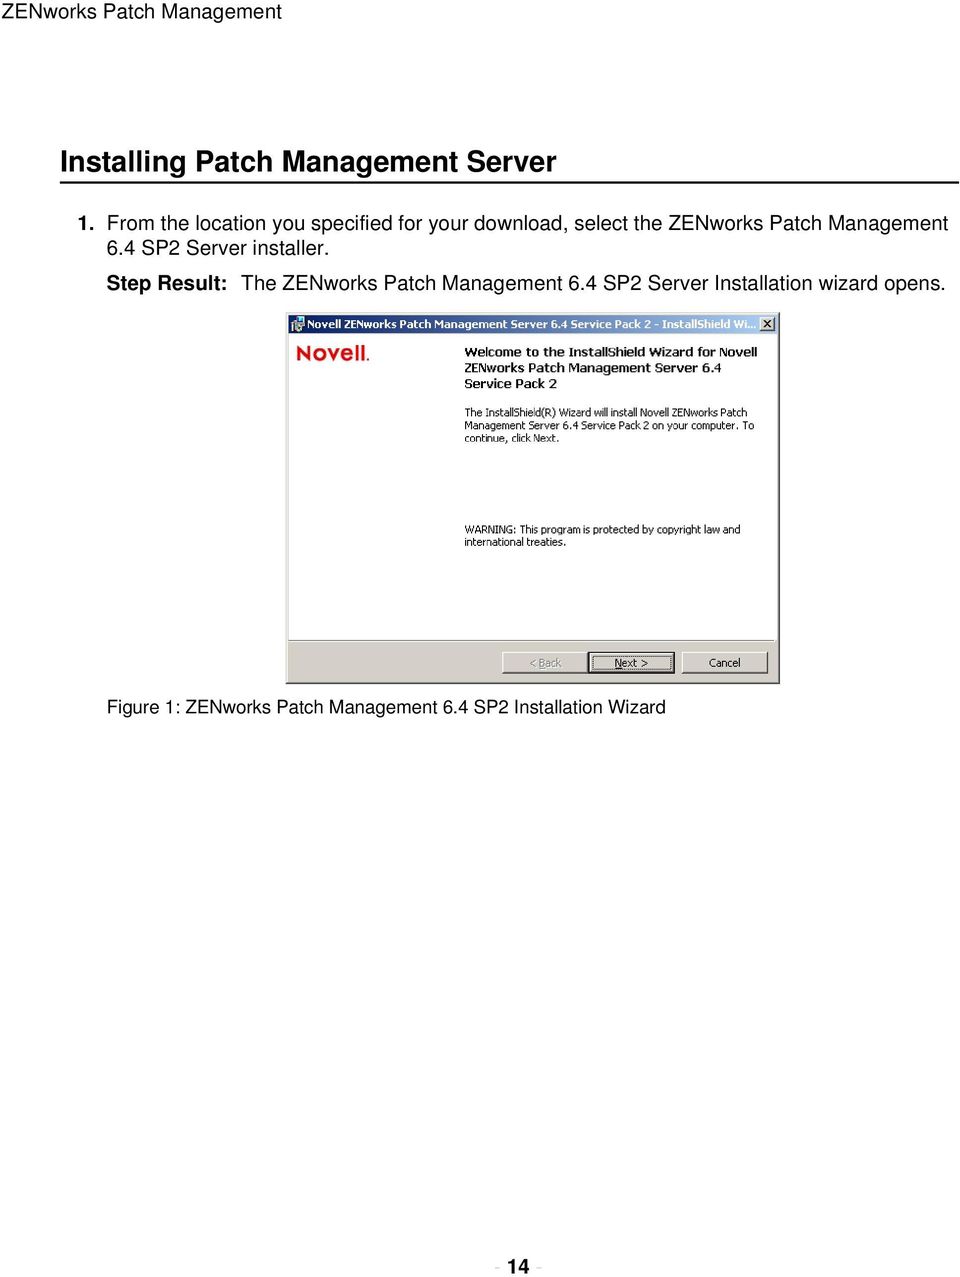 Management 6.4 SP2 Server installer. Step Result: The ZENworks Patch Management 6.